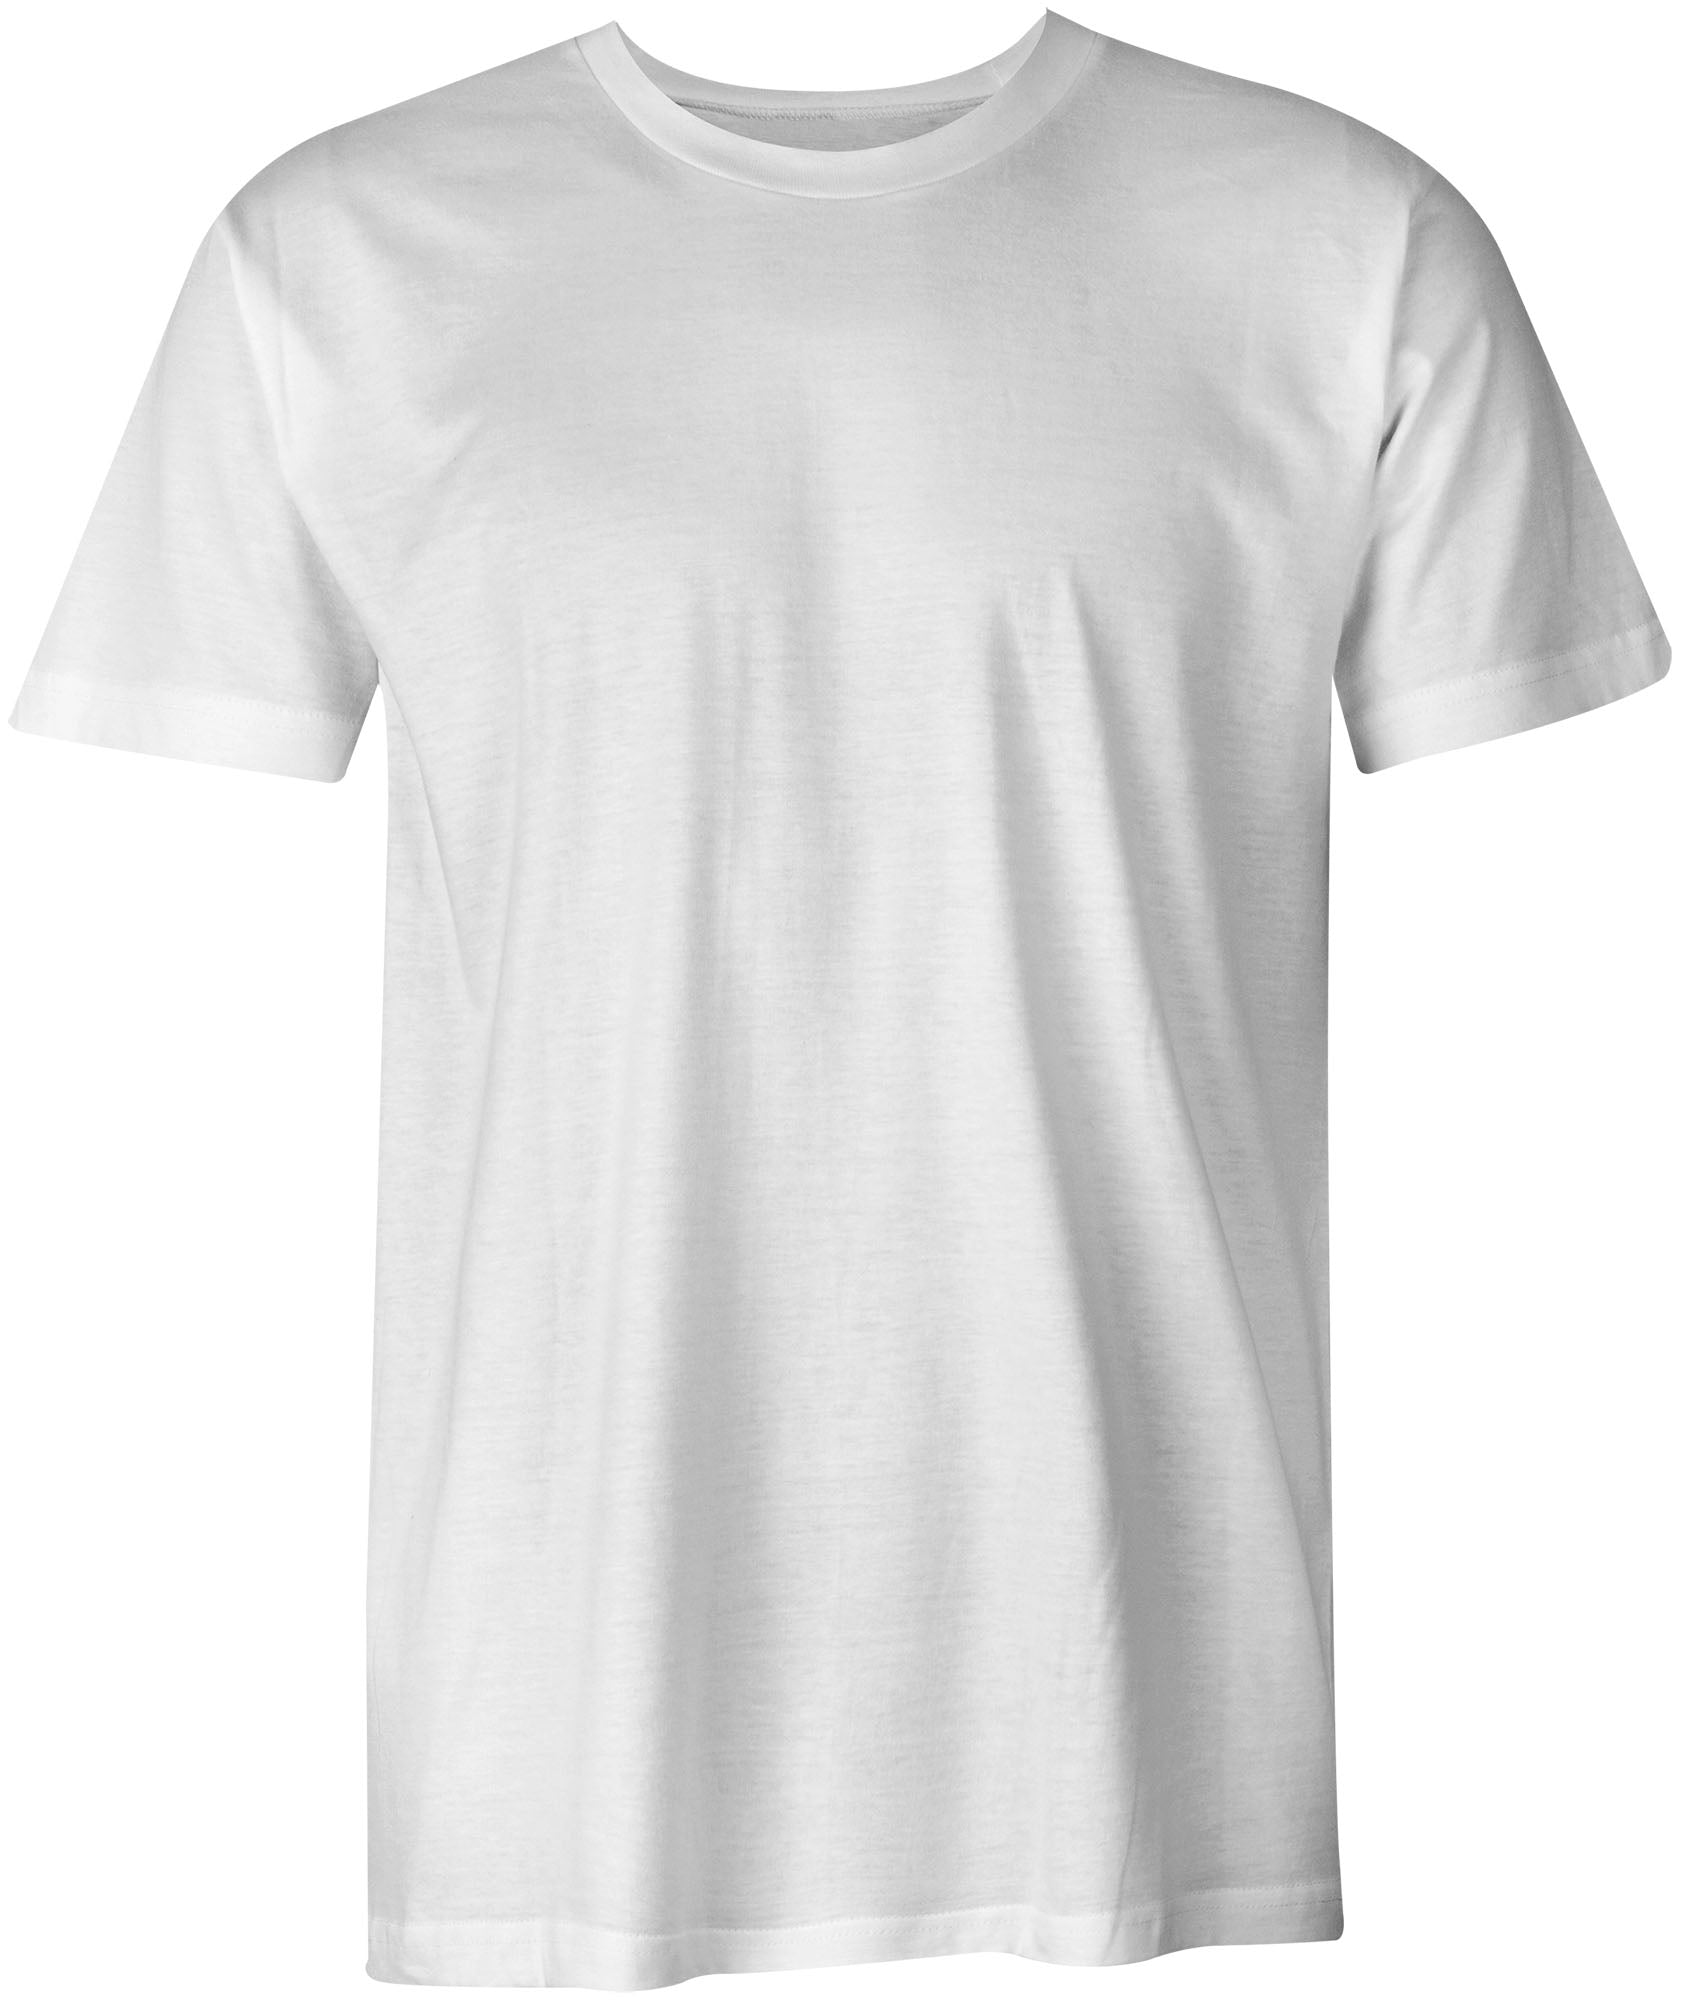 Design Online Double Sided Custom T-Shirt